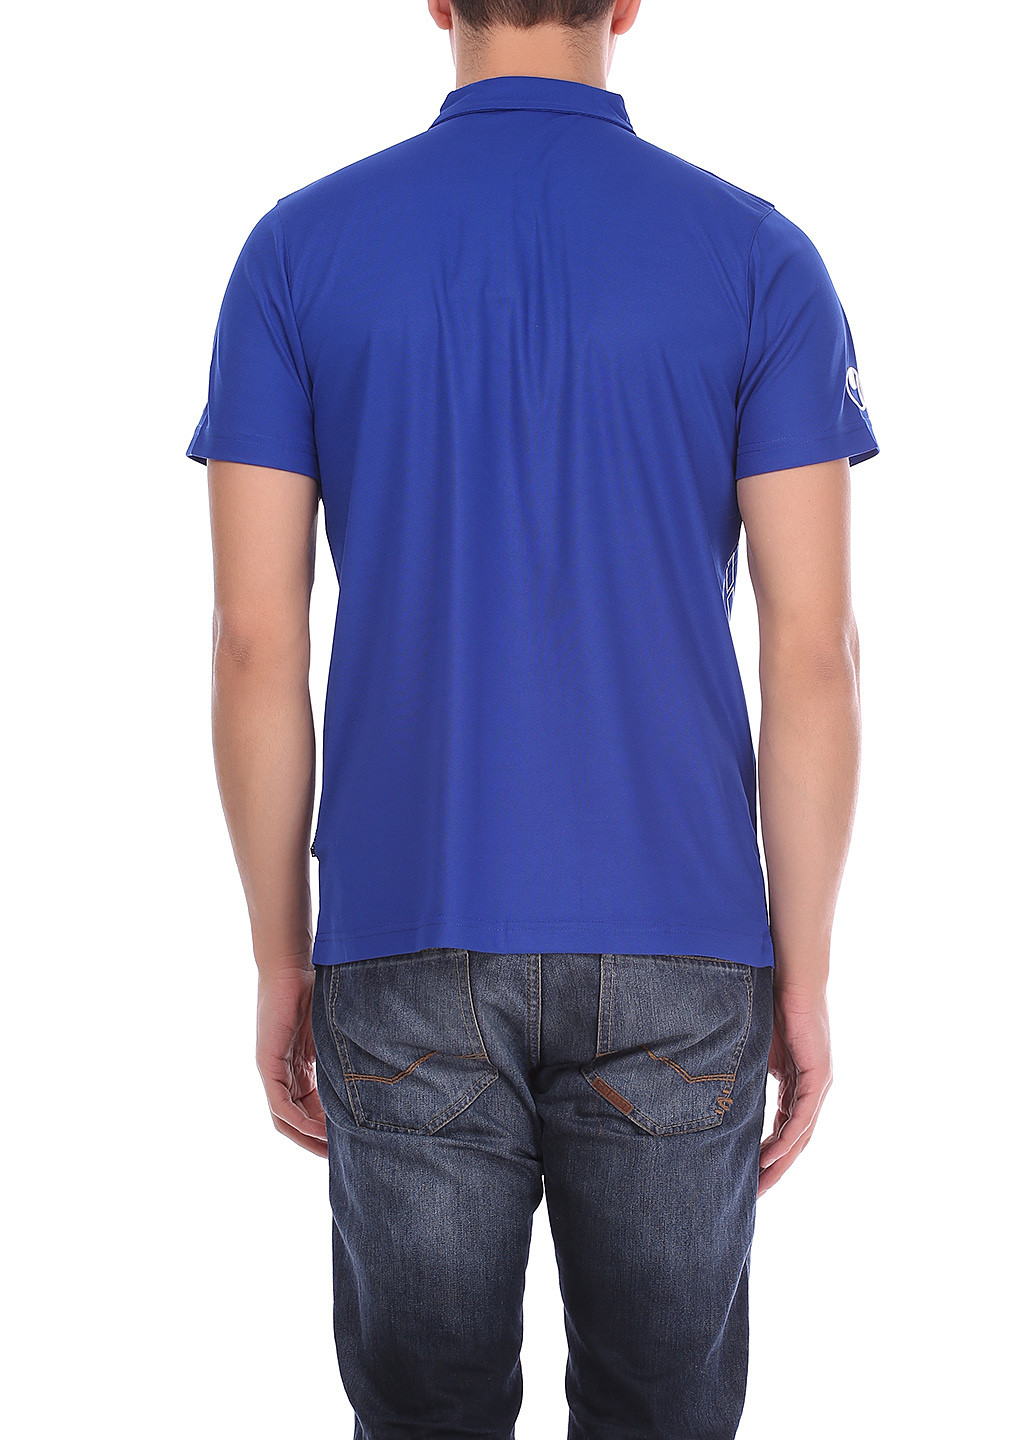 Синяя футболка-поло для мужчин Uhlsport однотонная